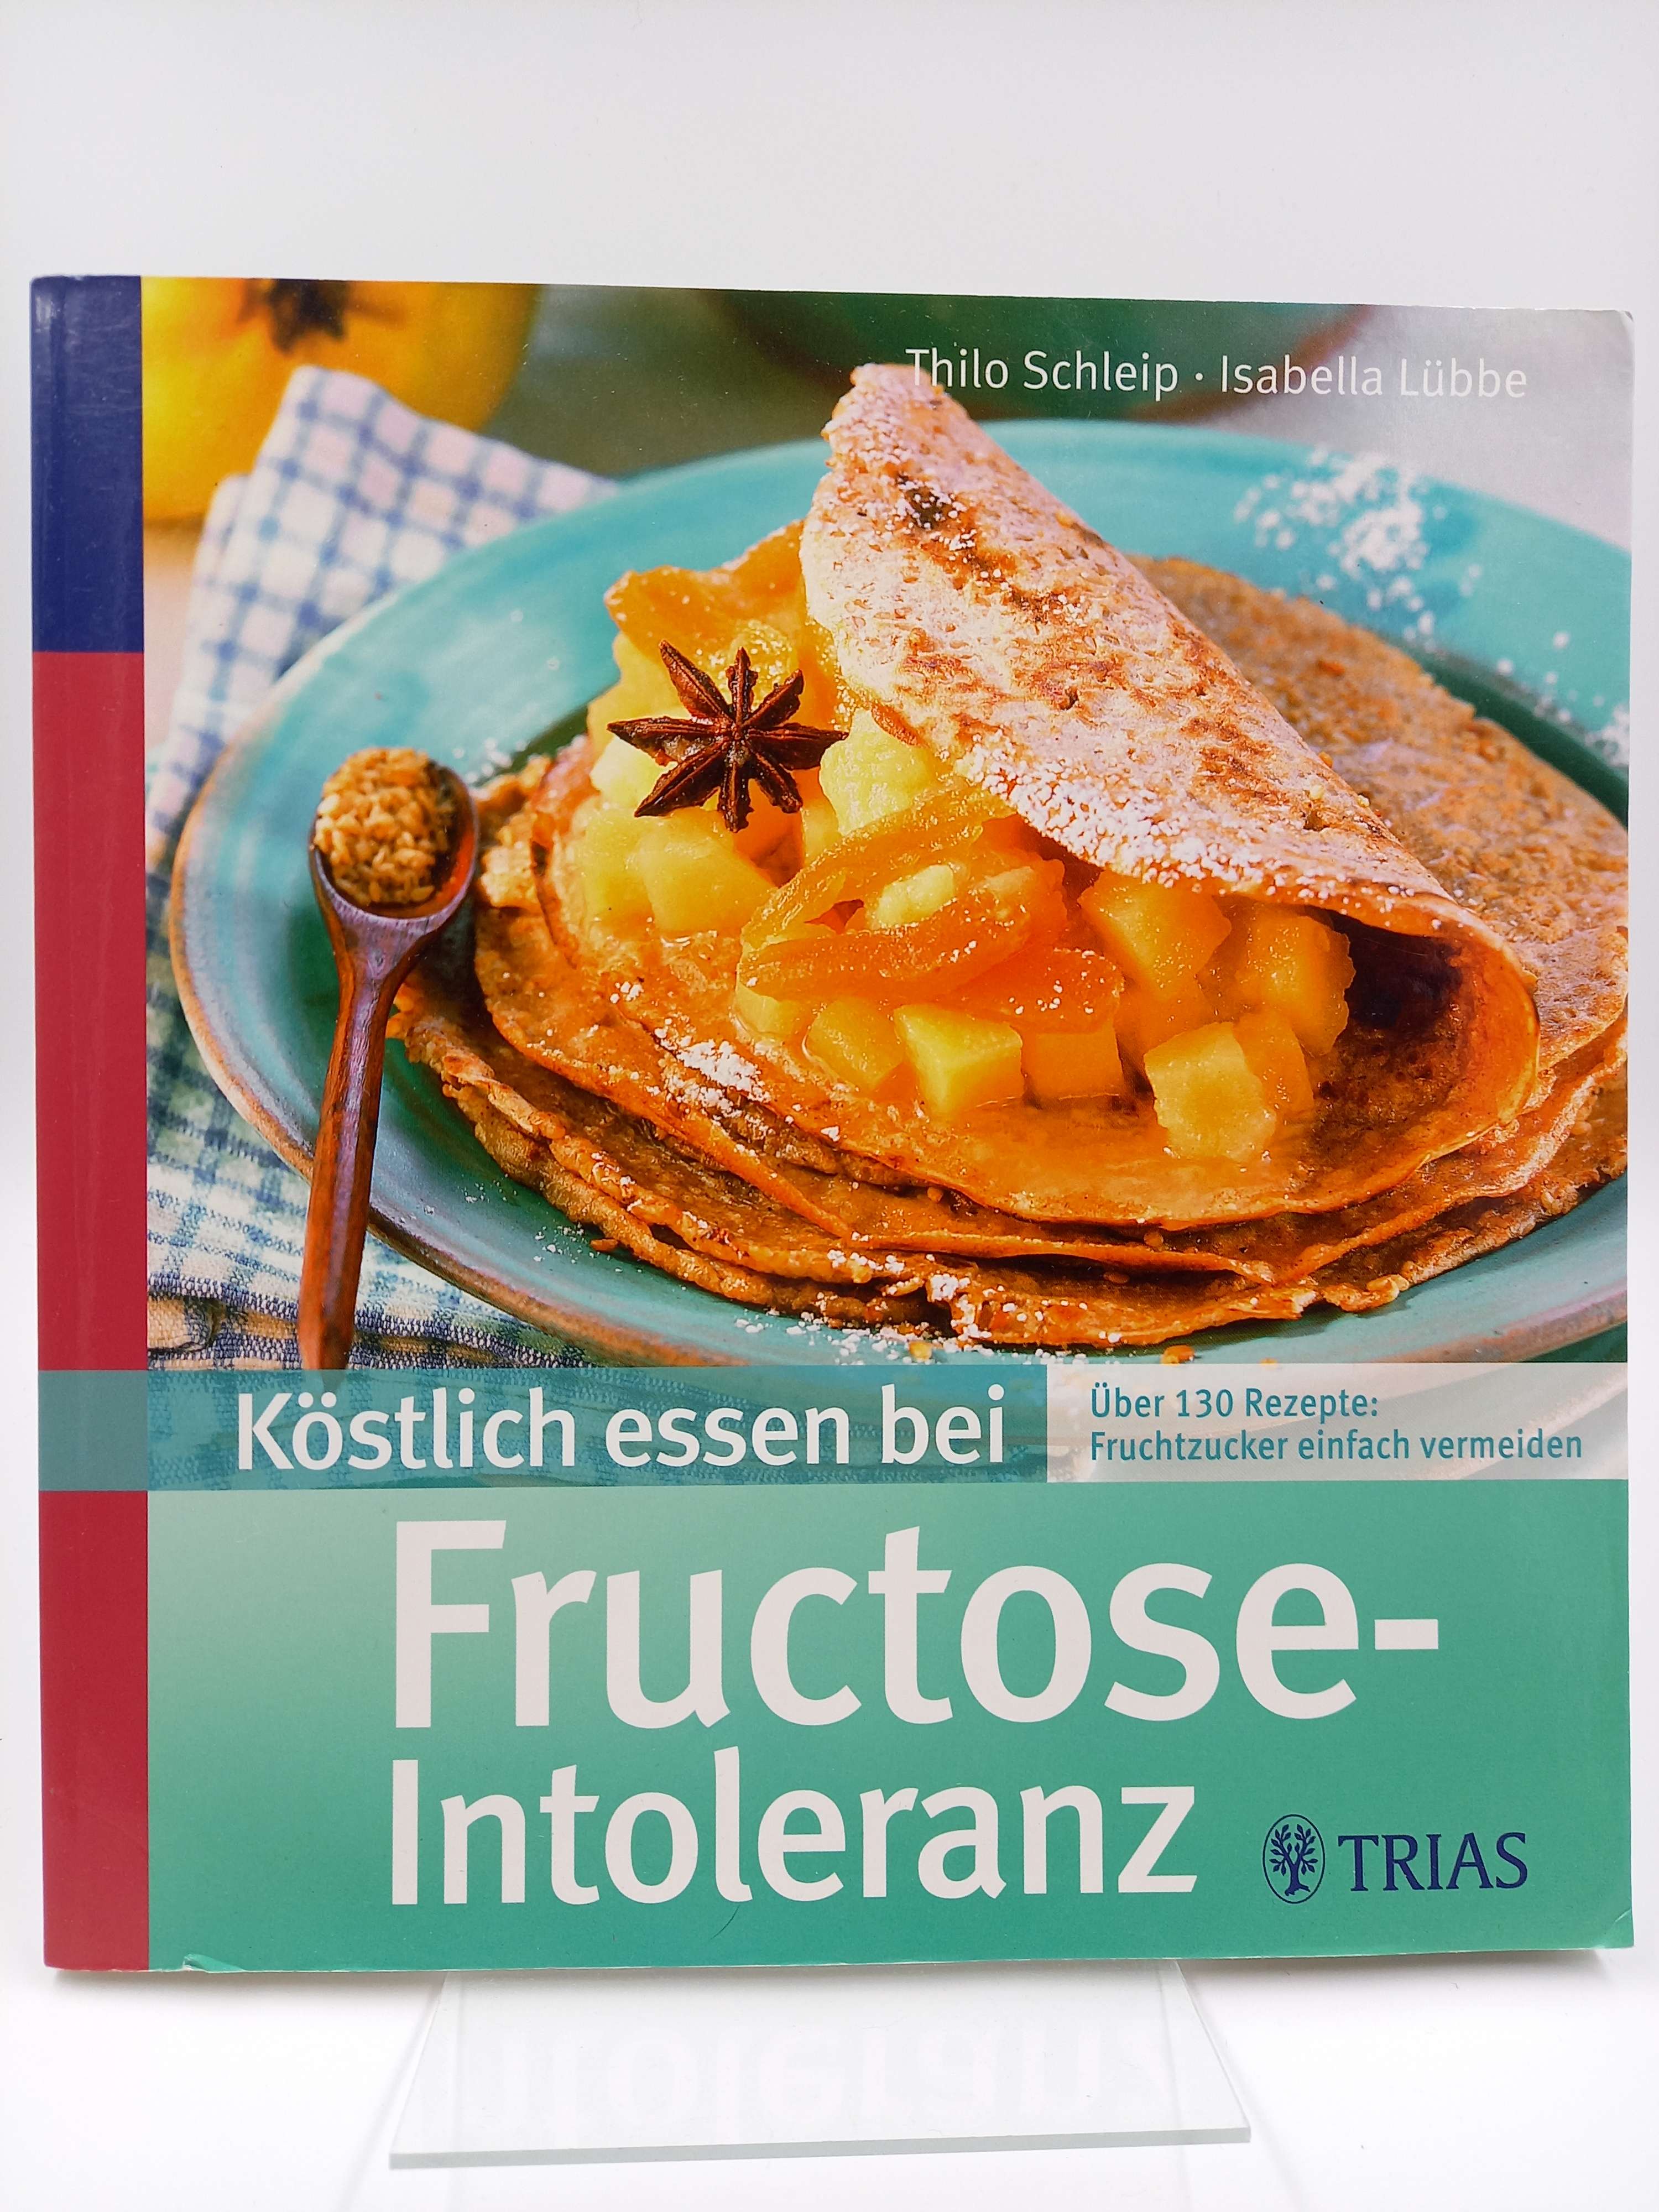 Köstlich essen bei Fructose-Intoleranz. Über 130 Rezepte: Fruchtzucker einfach vermeiden - Schleip, Thilo / Isabella Lübbe